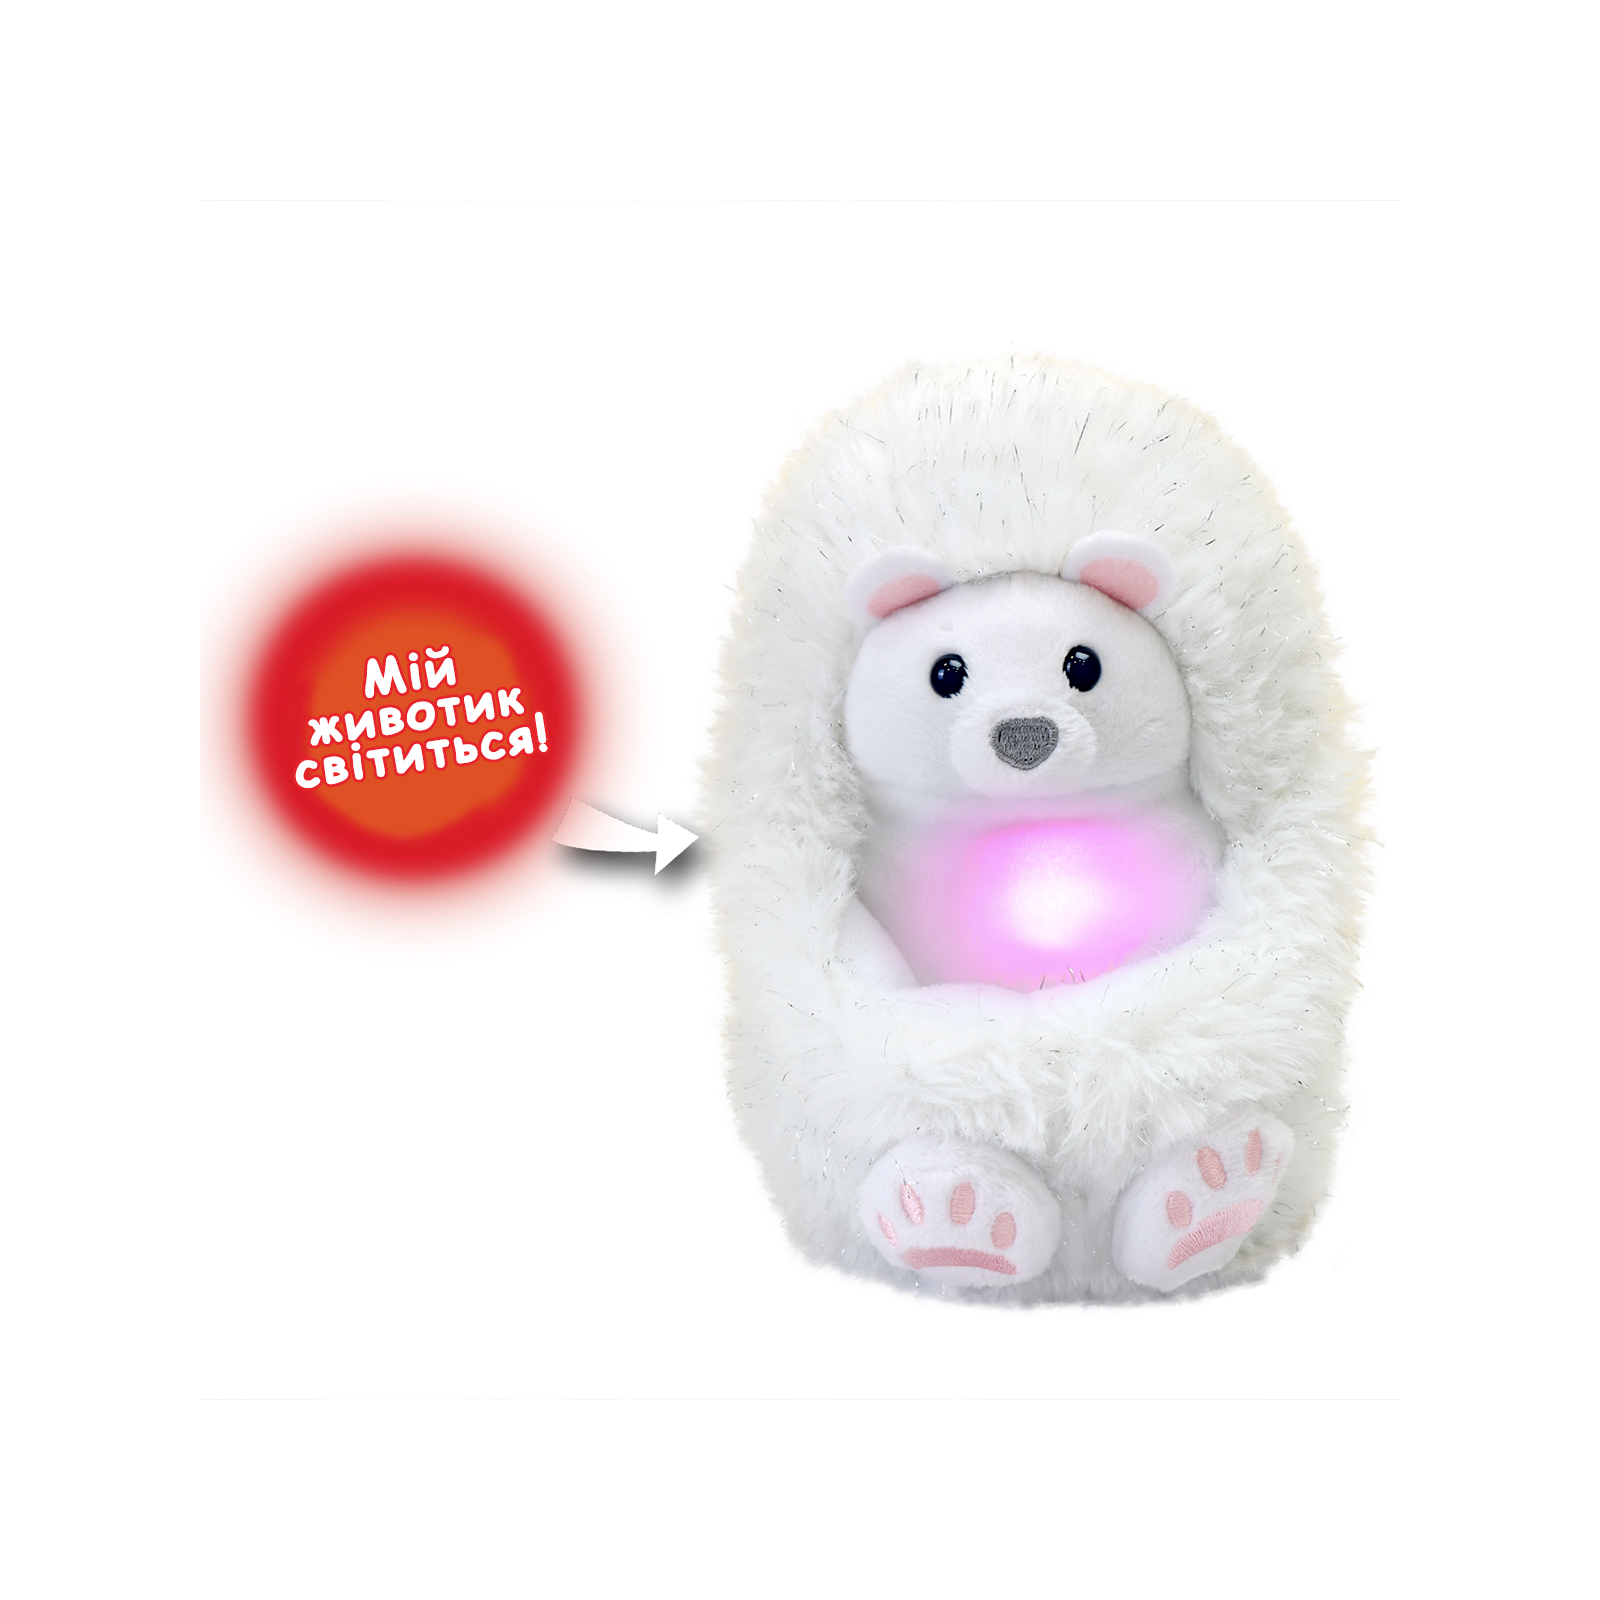 Интерактивная игрушка Curlimals серии Arctic Glow - Полярный мишка Перри (3725) изображение 4